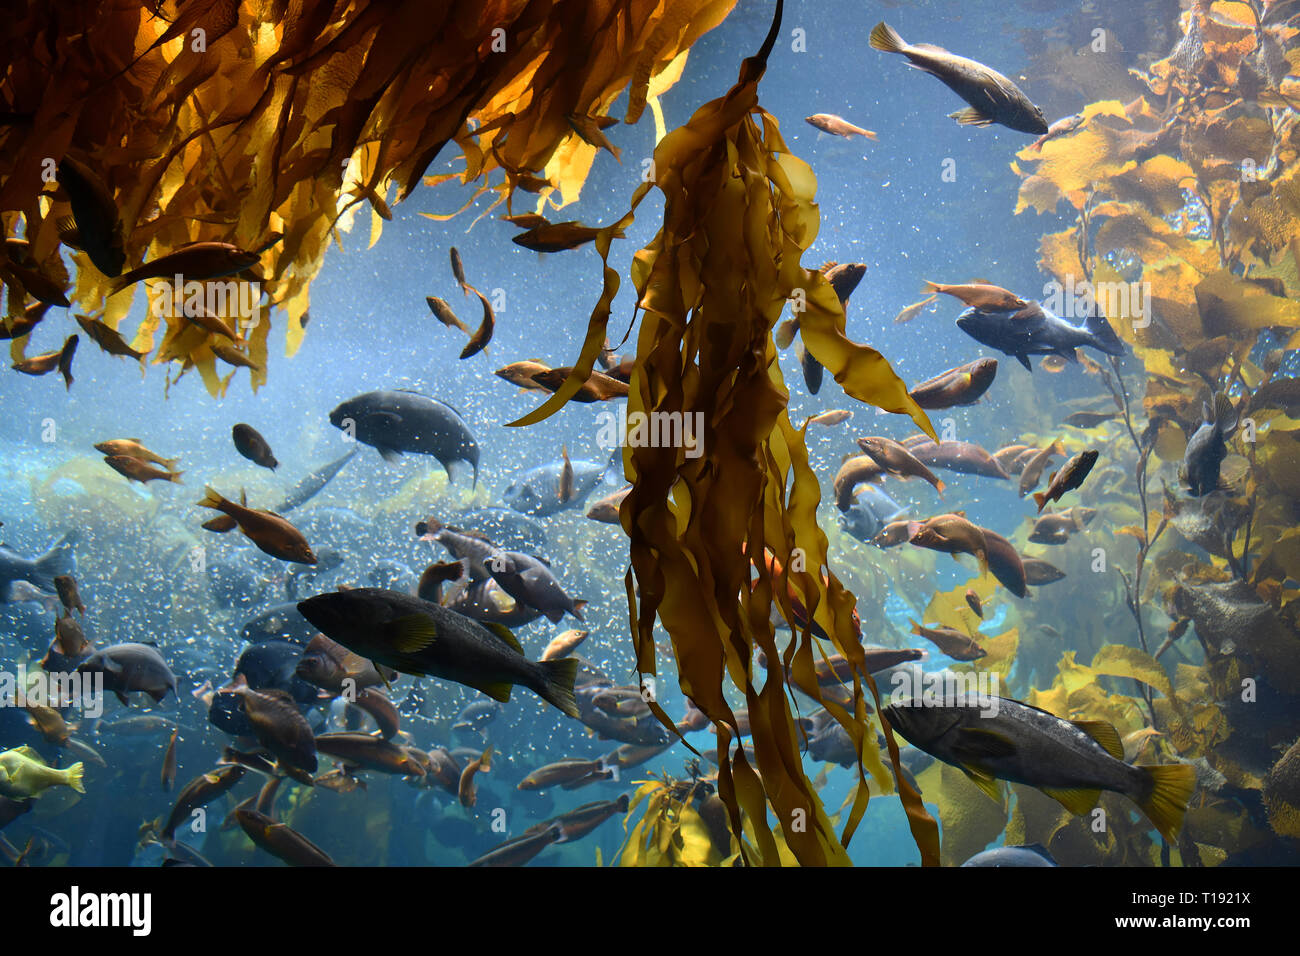 feeding frenzy in kelp forest Stock Photo